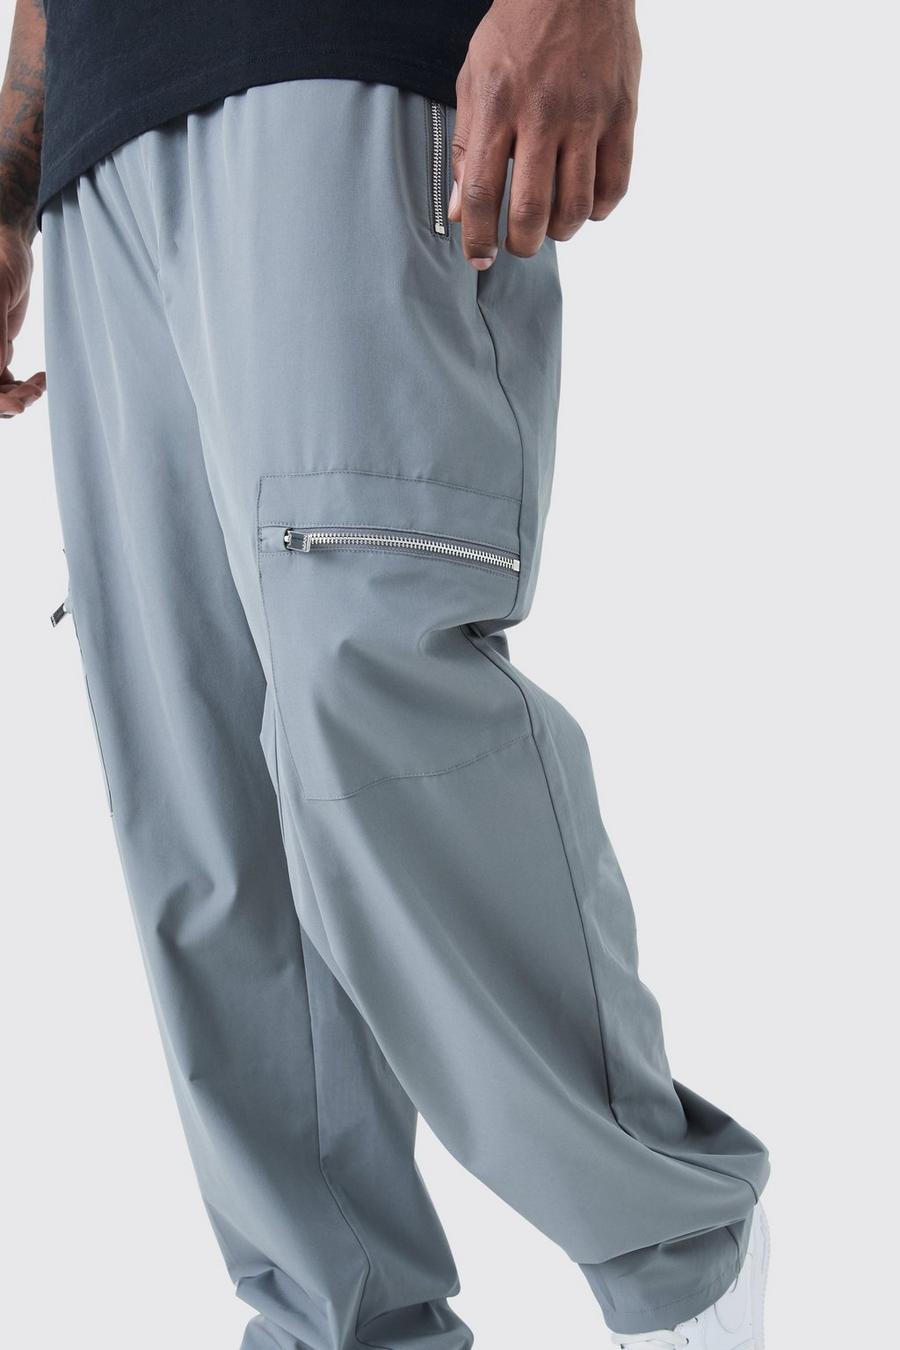 Pantalón Plus cargo utilitario elástico técnico con cintura elástica, Charcoal